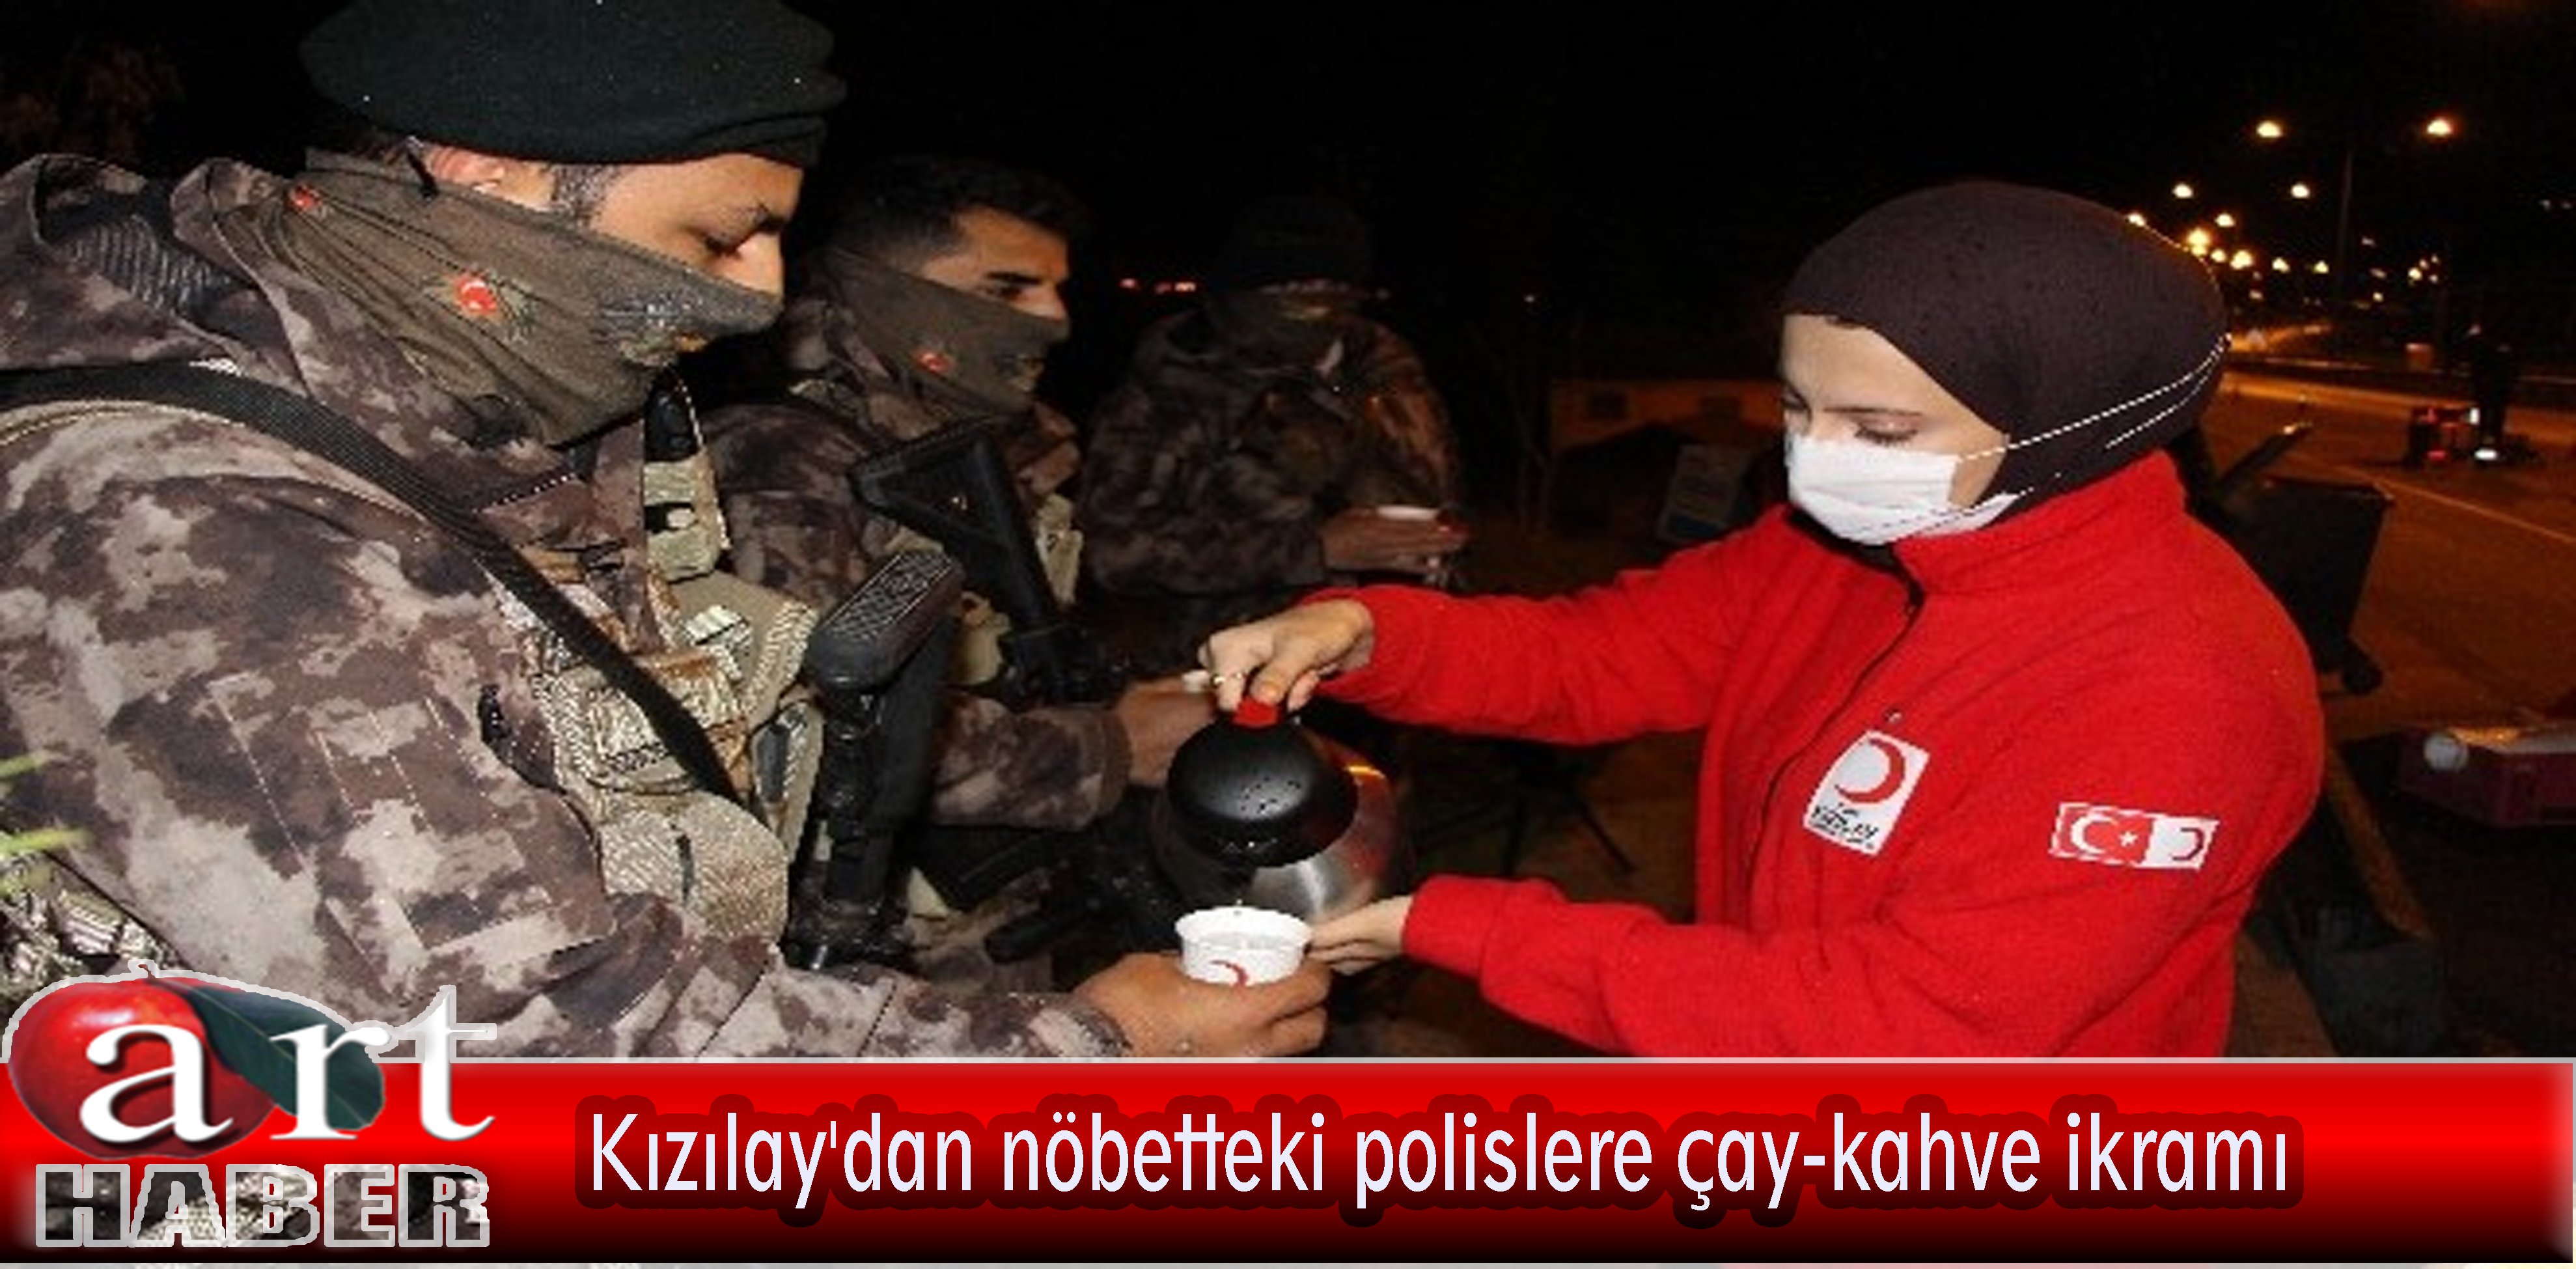 Kızılay’dan nöbetteki polislere çay-kahve ikramı